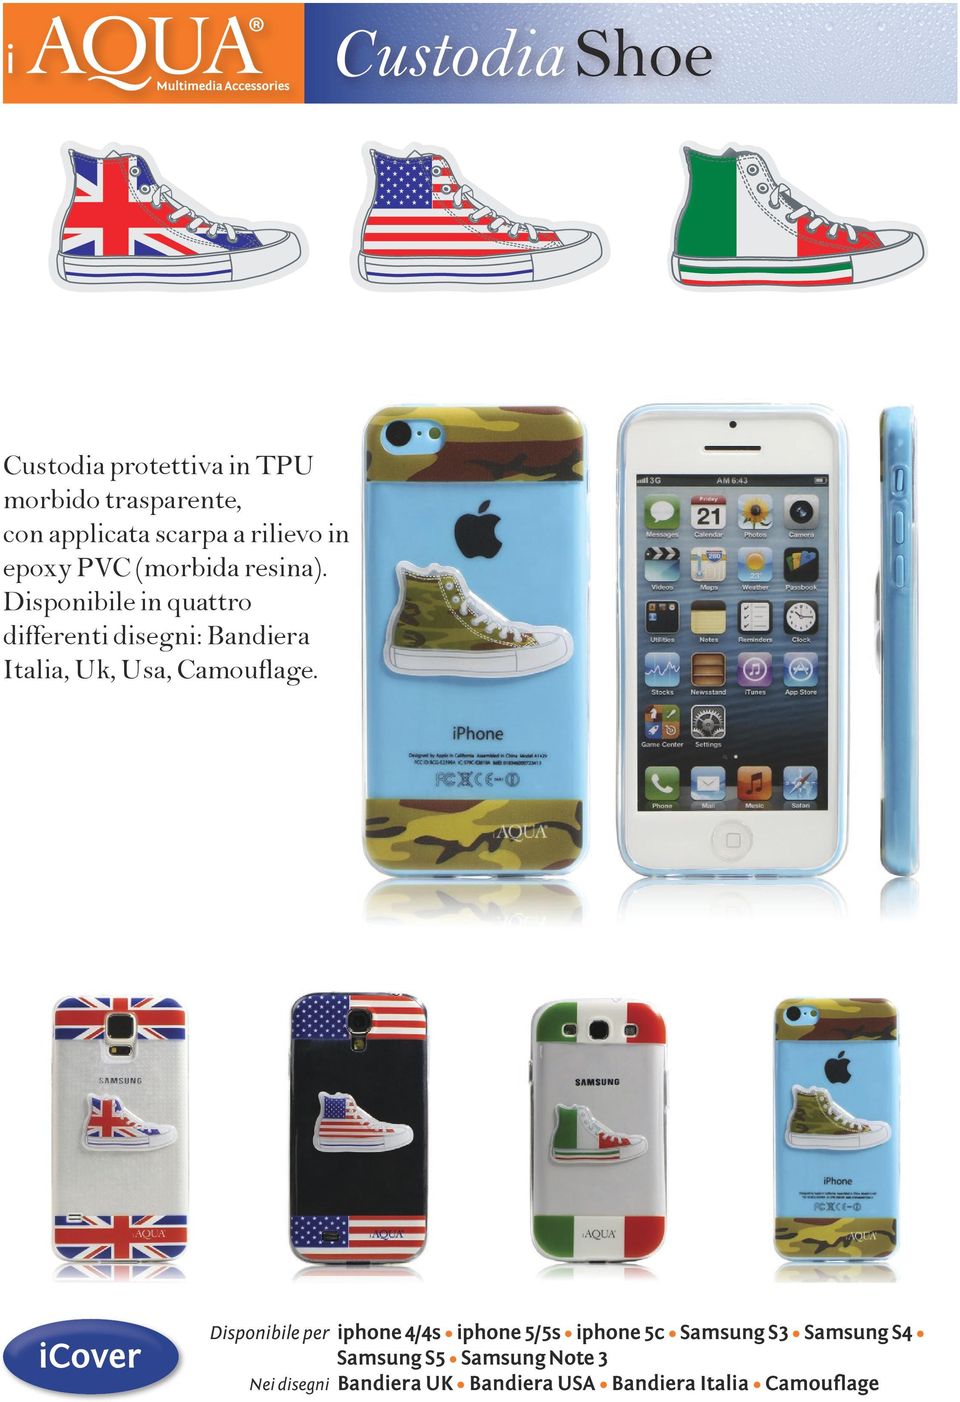 Disponibile in quattro differenti disegni: Bandiera Italia, Uk, Usa, Camouflage.